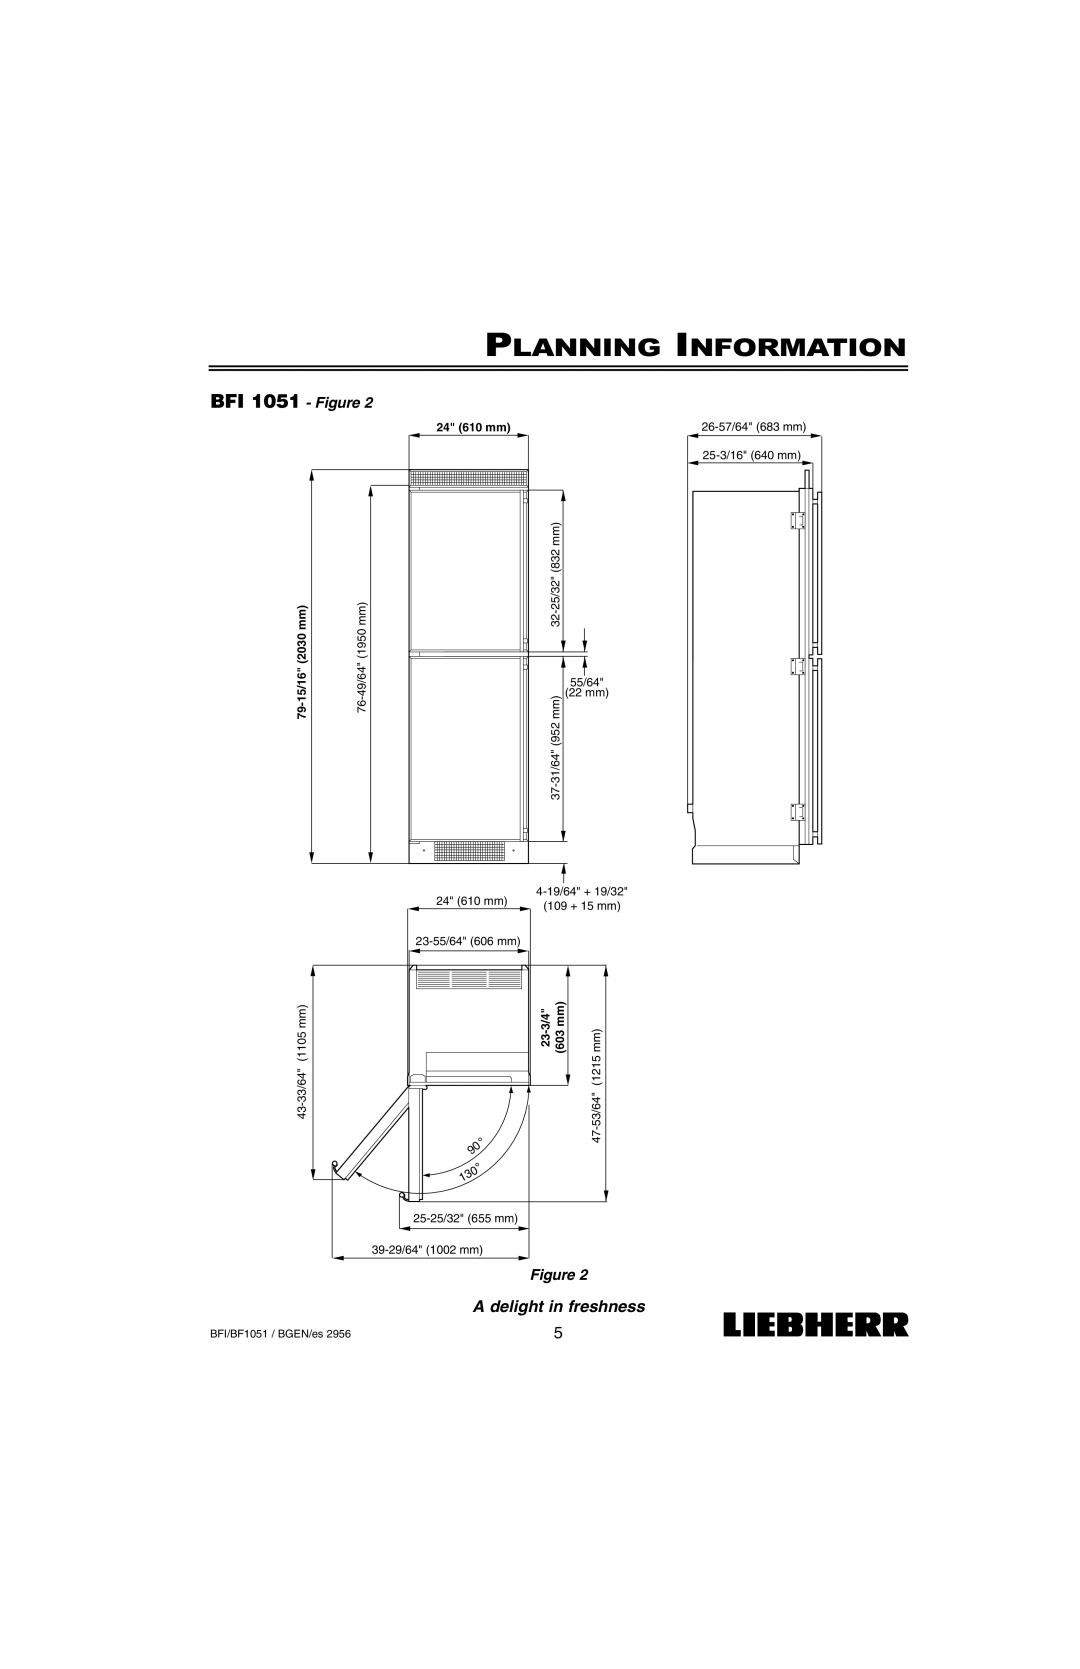 Liebherr BF1051 BFI 1051 - Figure, Planning Information, 55/64, 22 mm, 37-31/64952, 24 610 mm, 4-19/64+ 19/32, 109 + 15 mm 